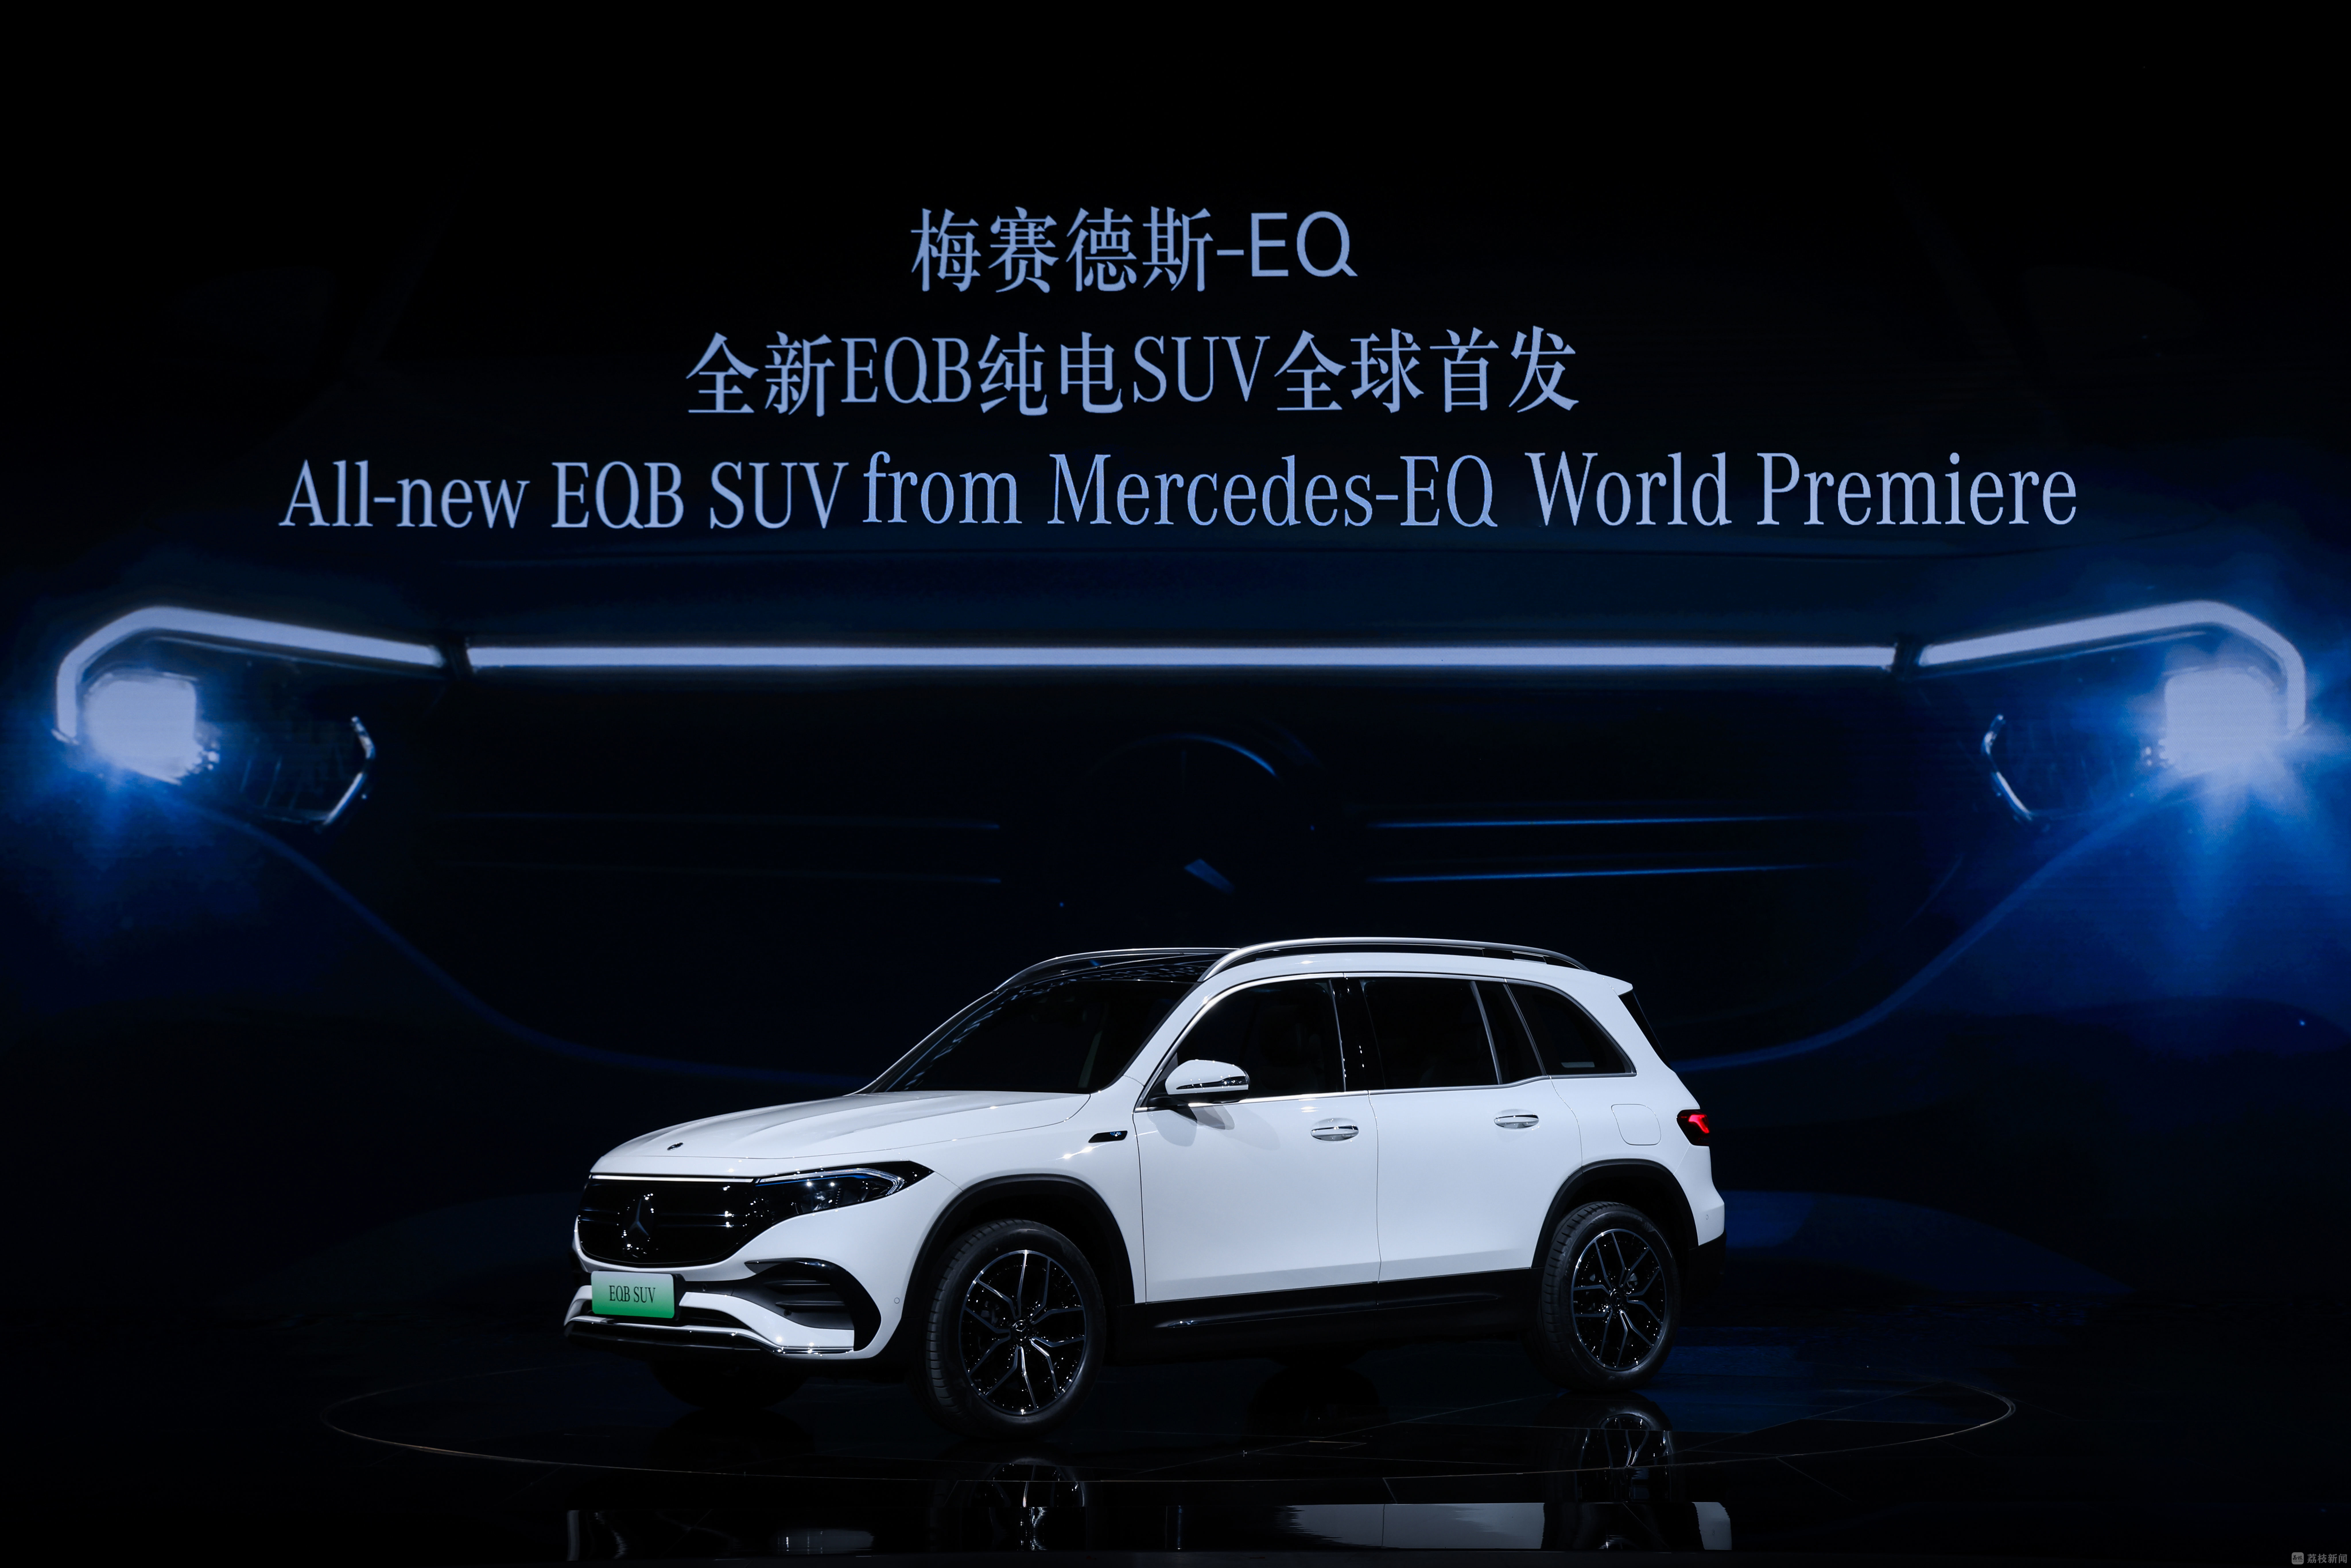 bat365中文官方网站奔驰上线纯电动汽车、特斯拉优化能耗问题……上海车展“新”